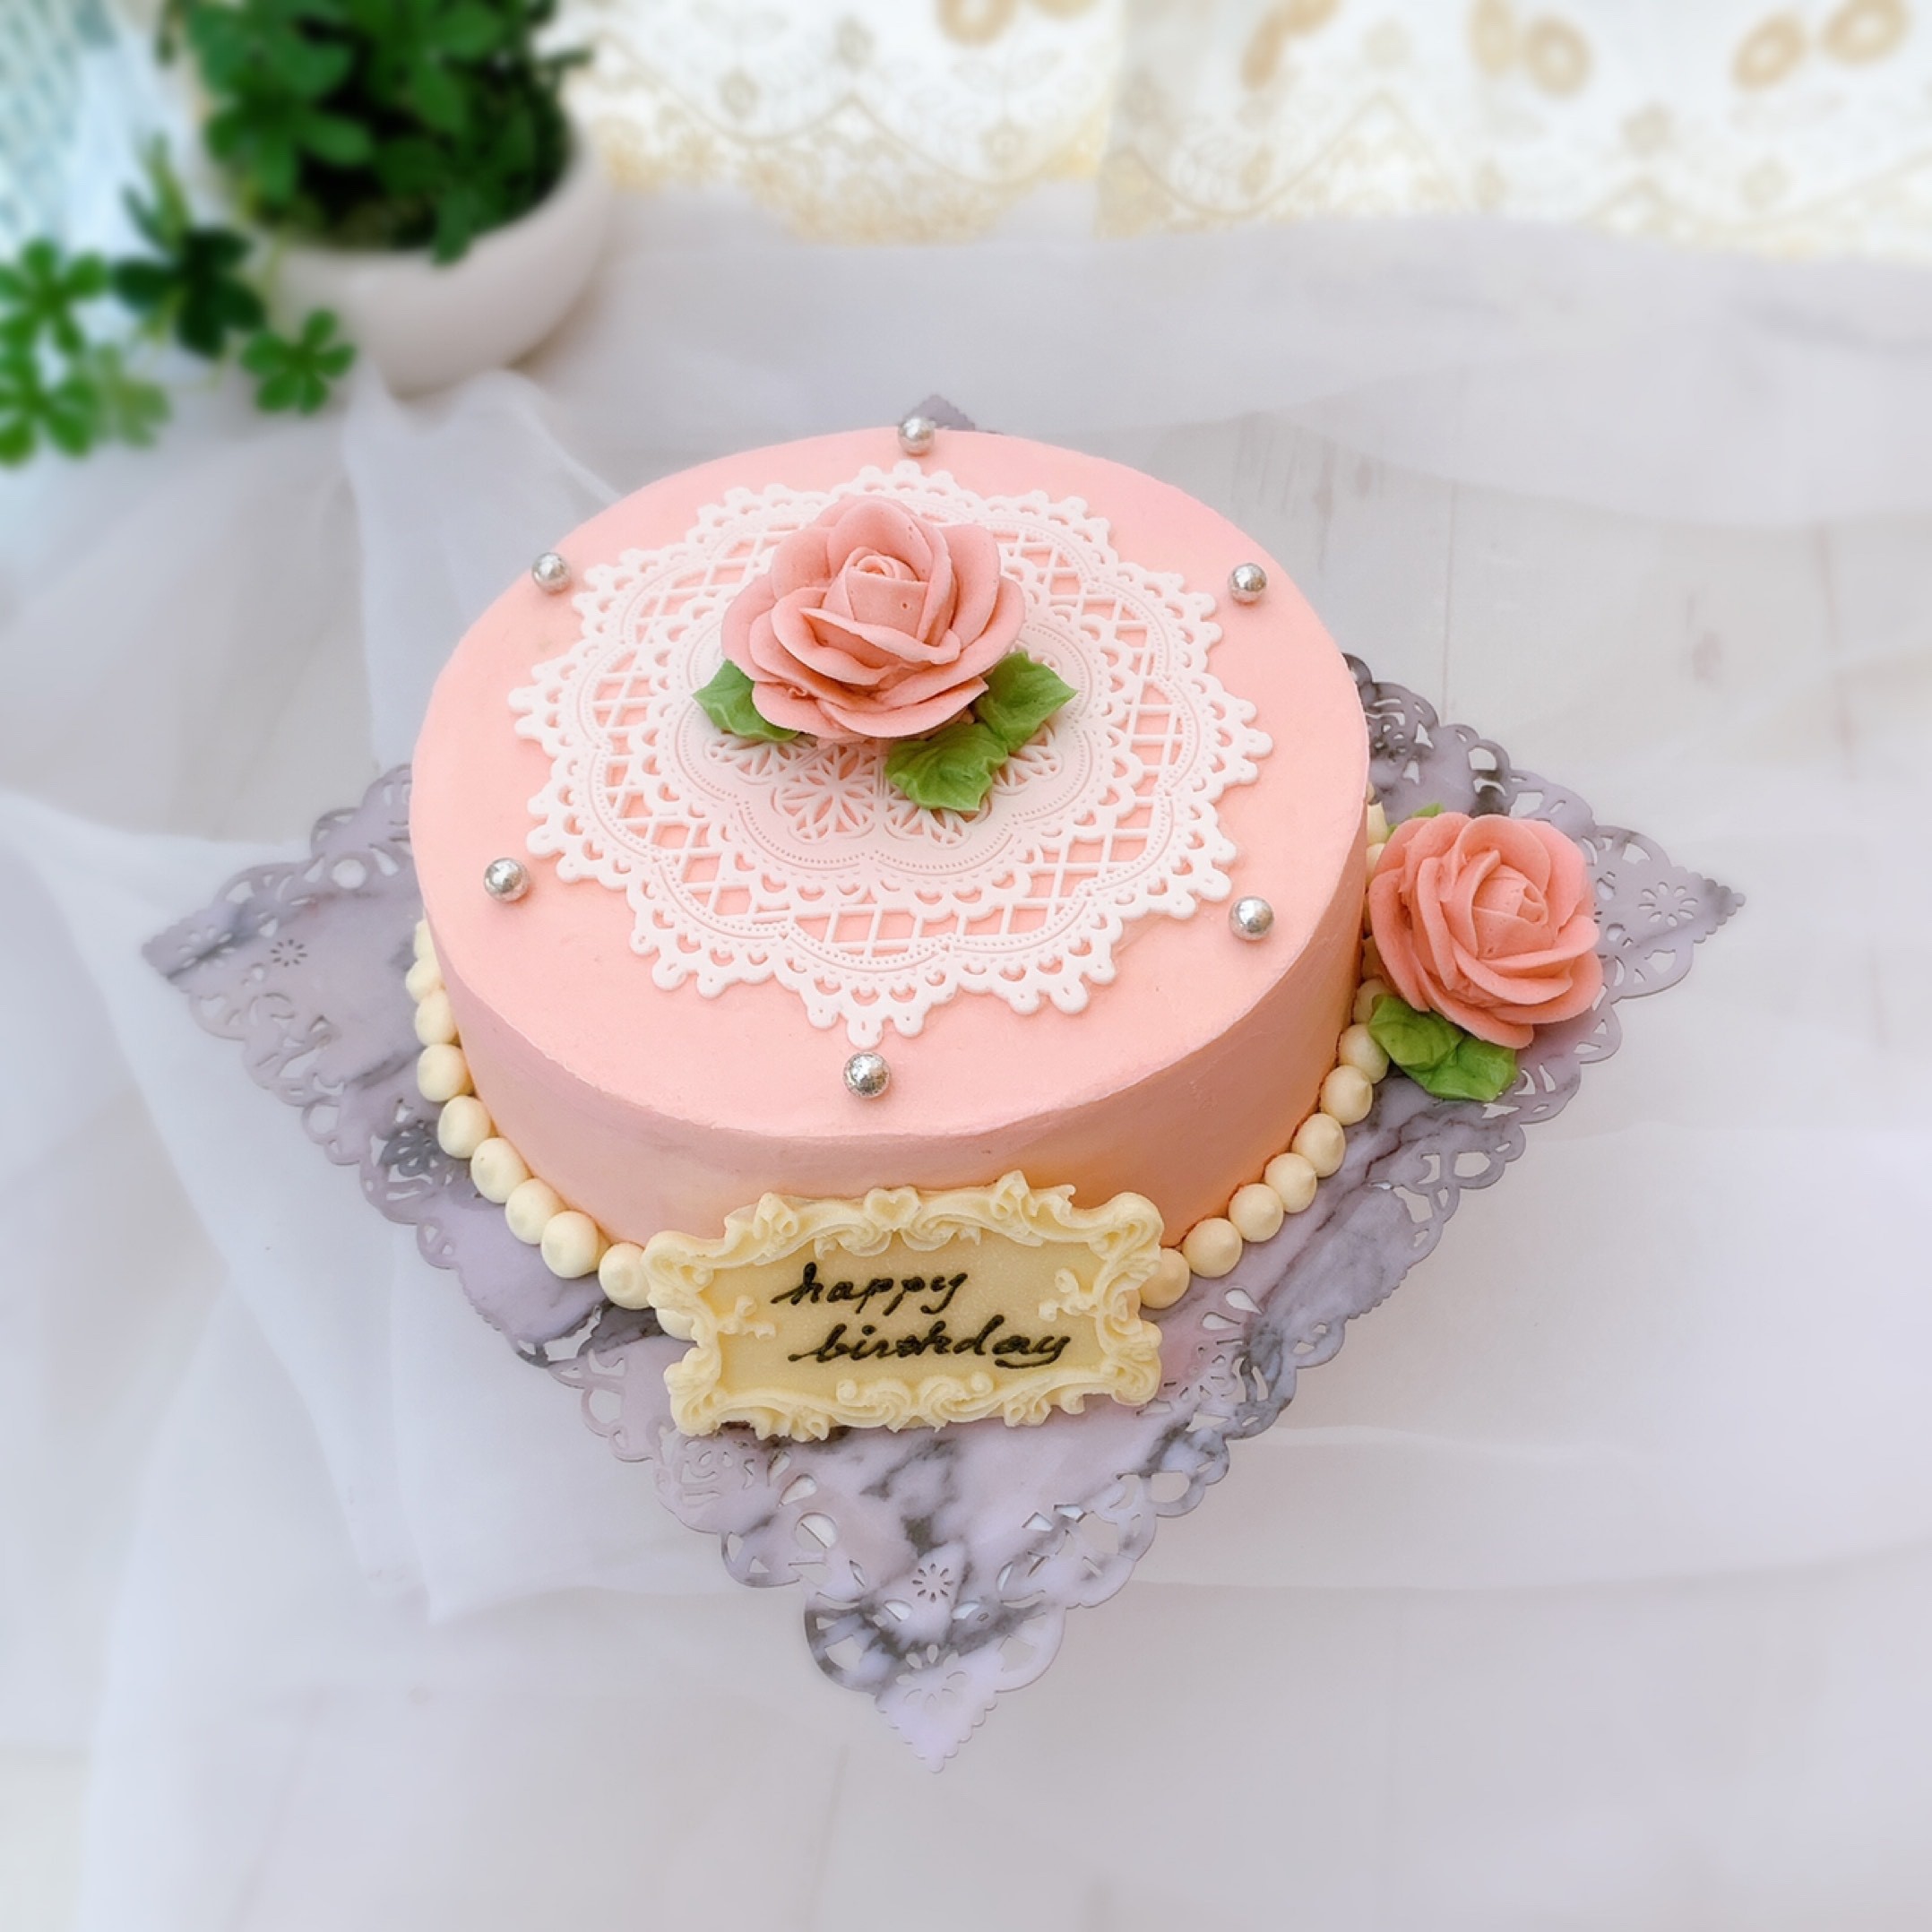 美しいチーズケーキ 薔薇とシュガーレースのケーキ 5号サイズ 15 Candy Meru Cake Jp